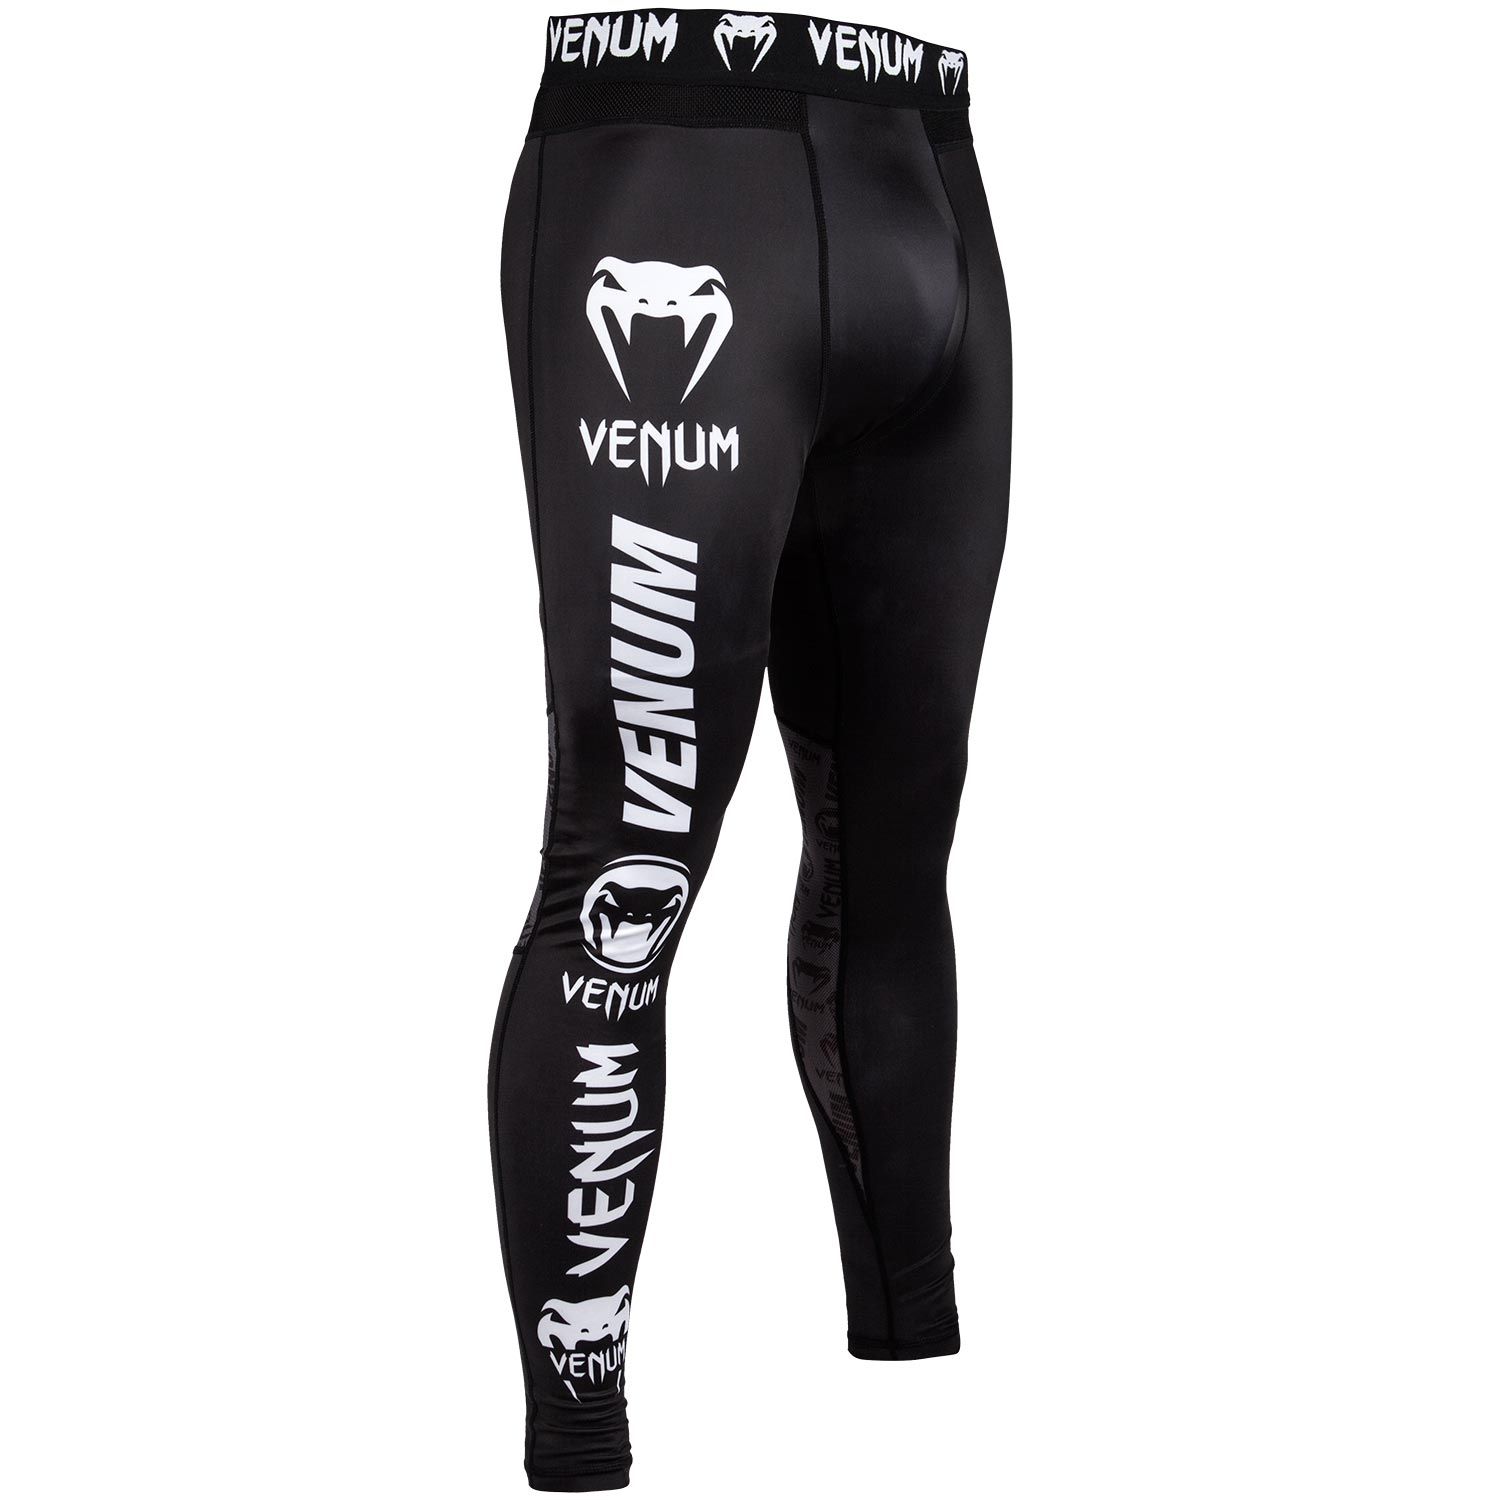 Pantaloni a compressione Venum Logos - Neri/Bianchi